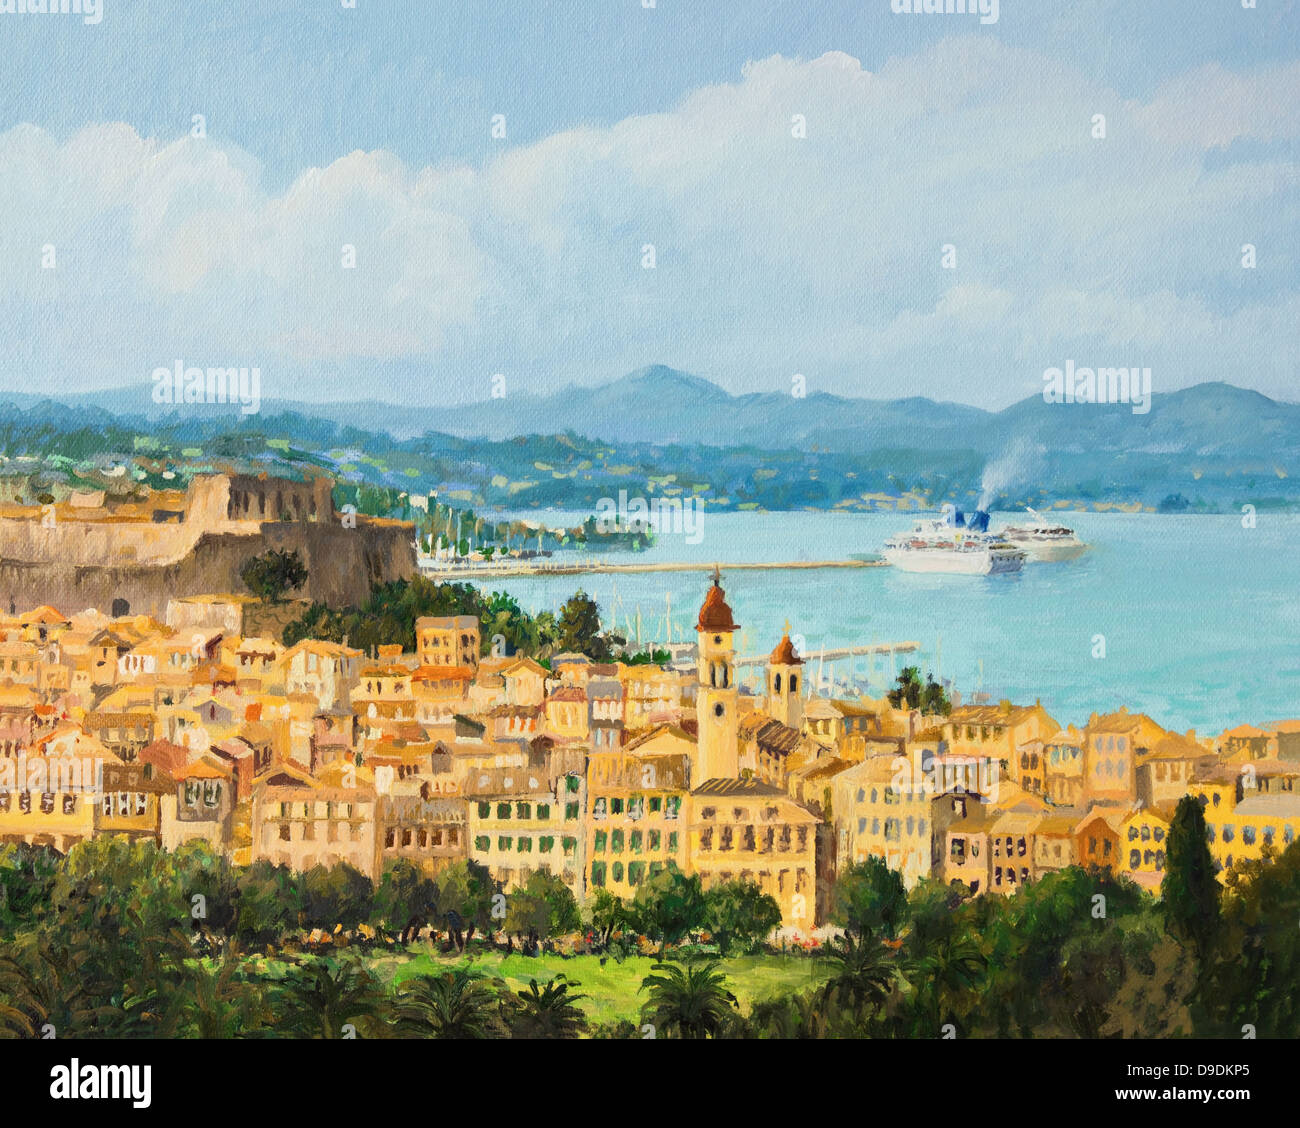 N la pittura ad olio su tela di una bellissima vista panoramica dell'isola di Corfù, dalla sommità della rocca sopra la città Corfu'. Foto Stock